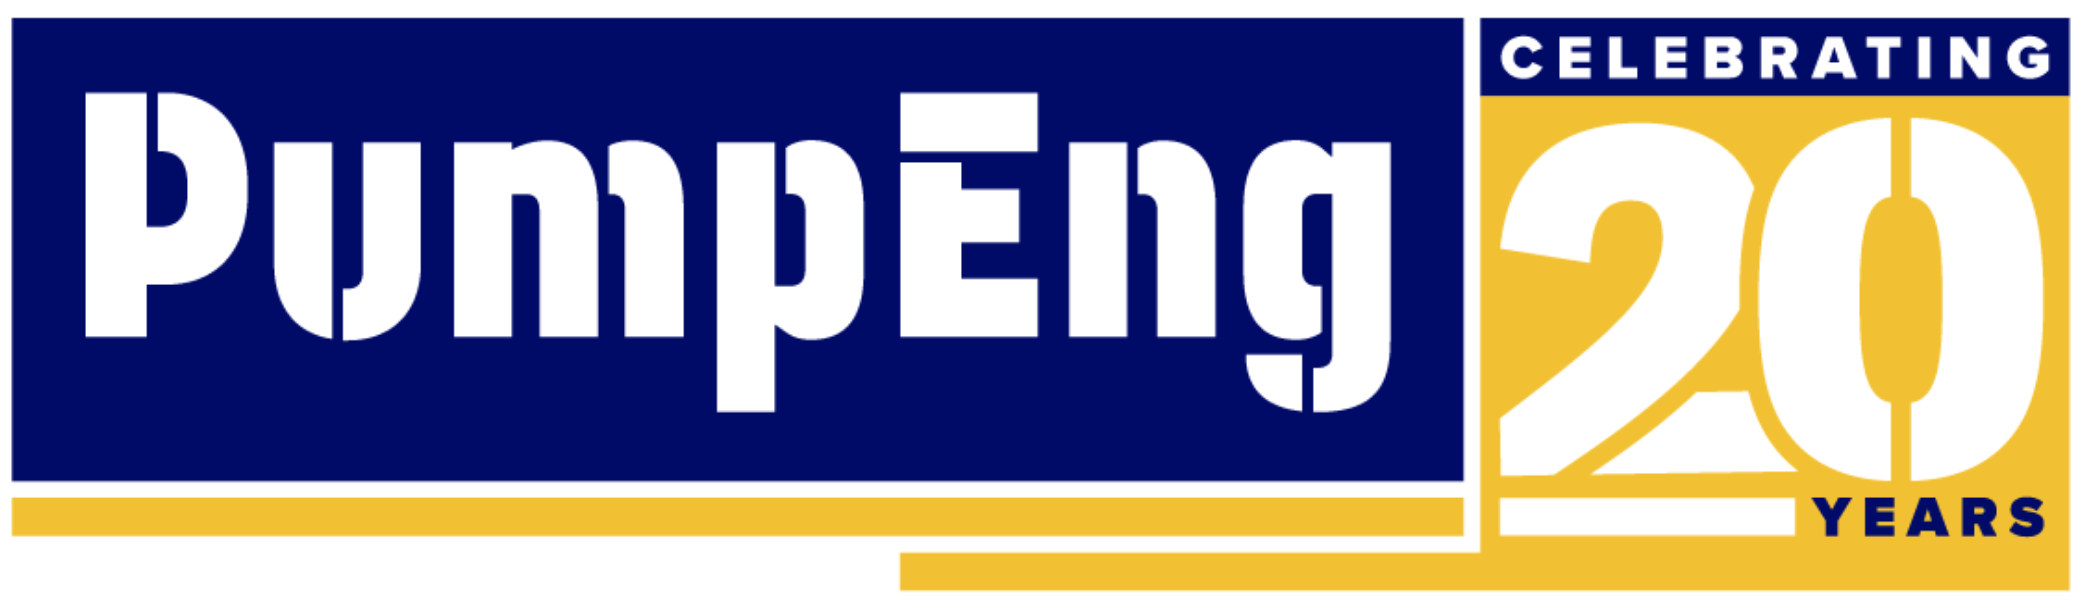 PumpEng celebrating 20 years logo